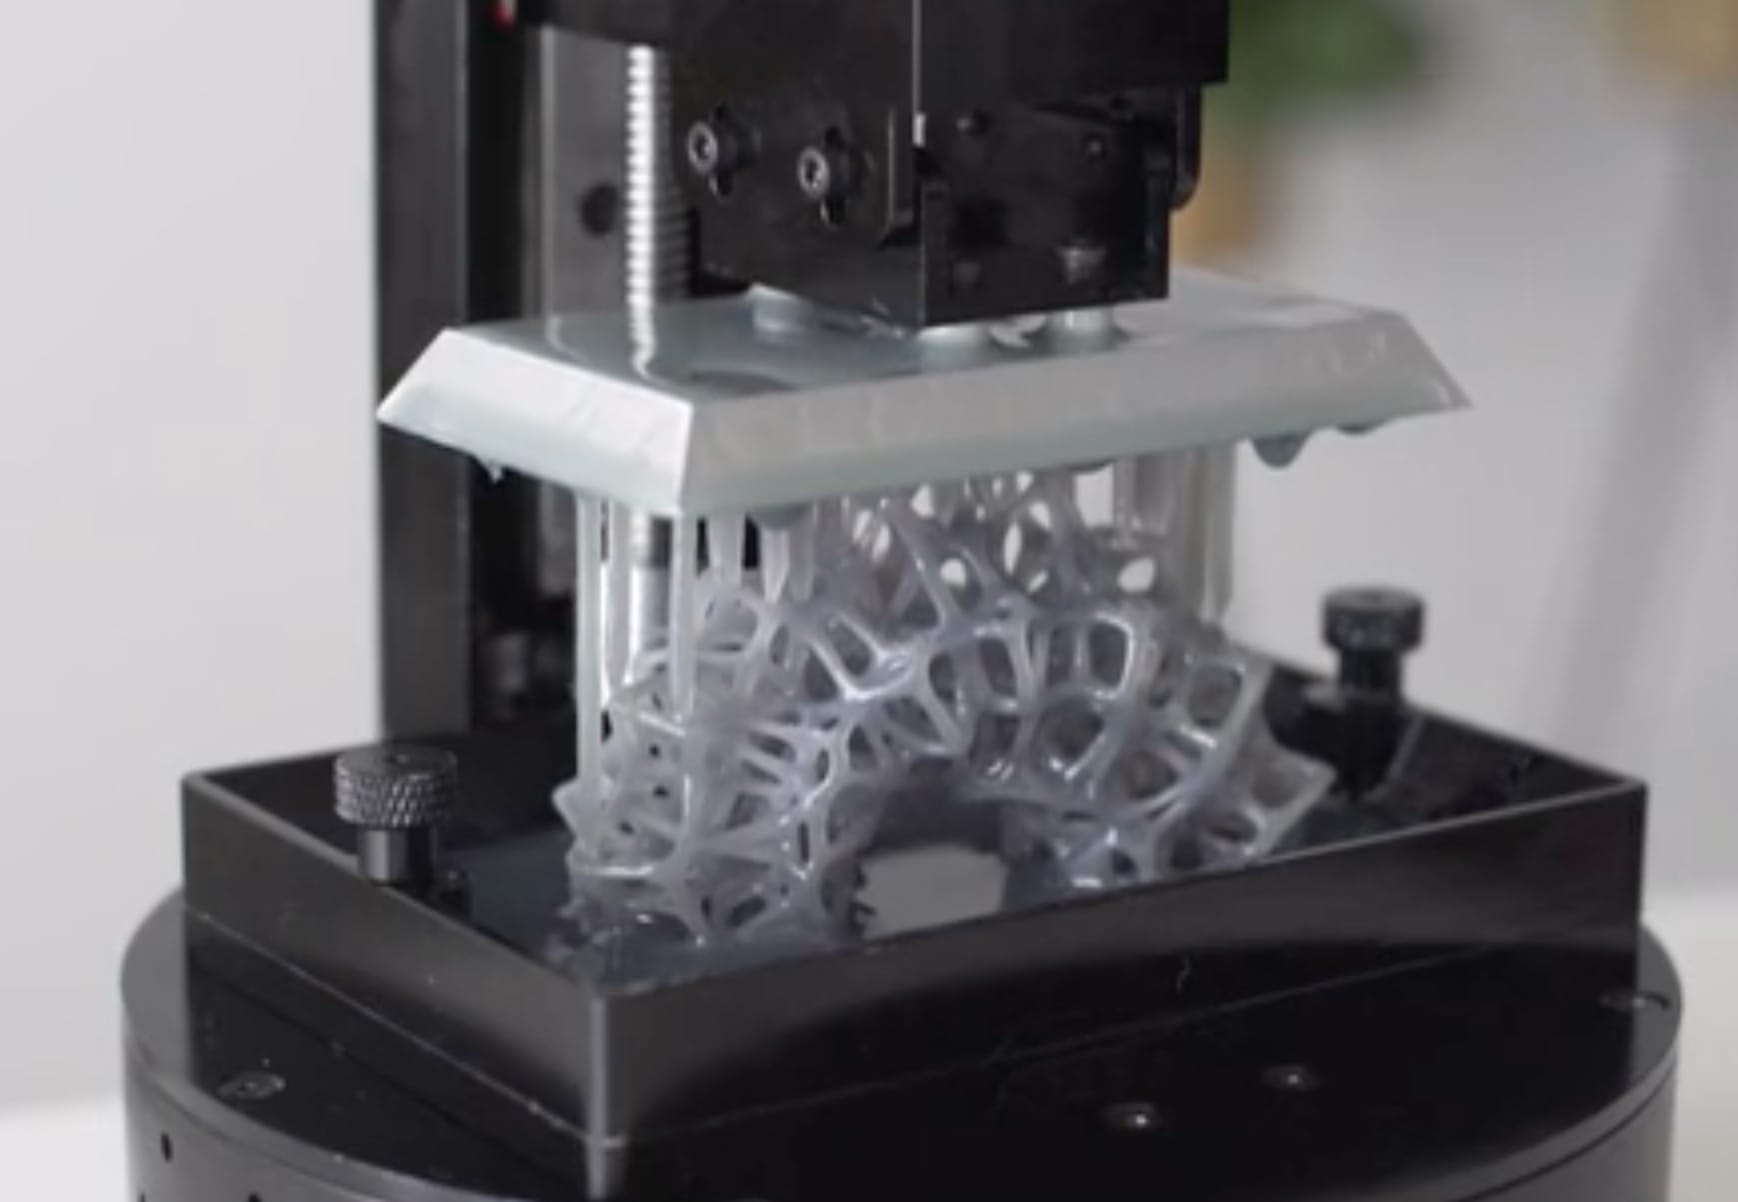  The Sparkmaker desktop 3D printer in action 